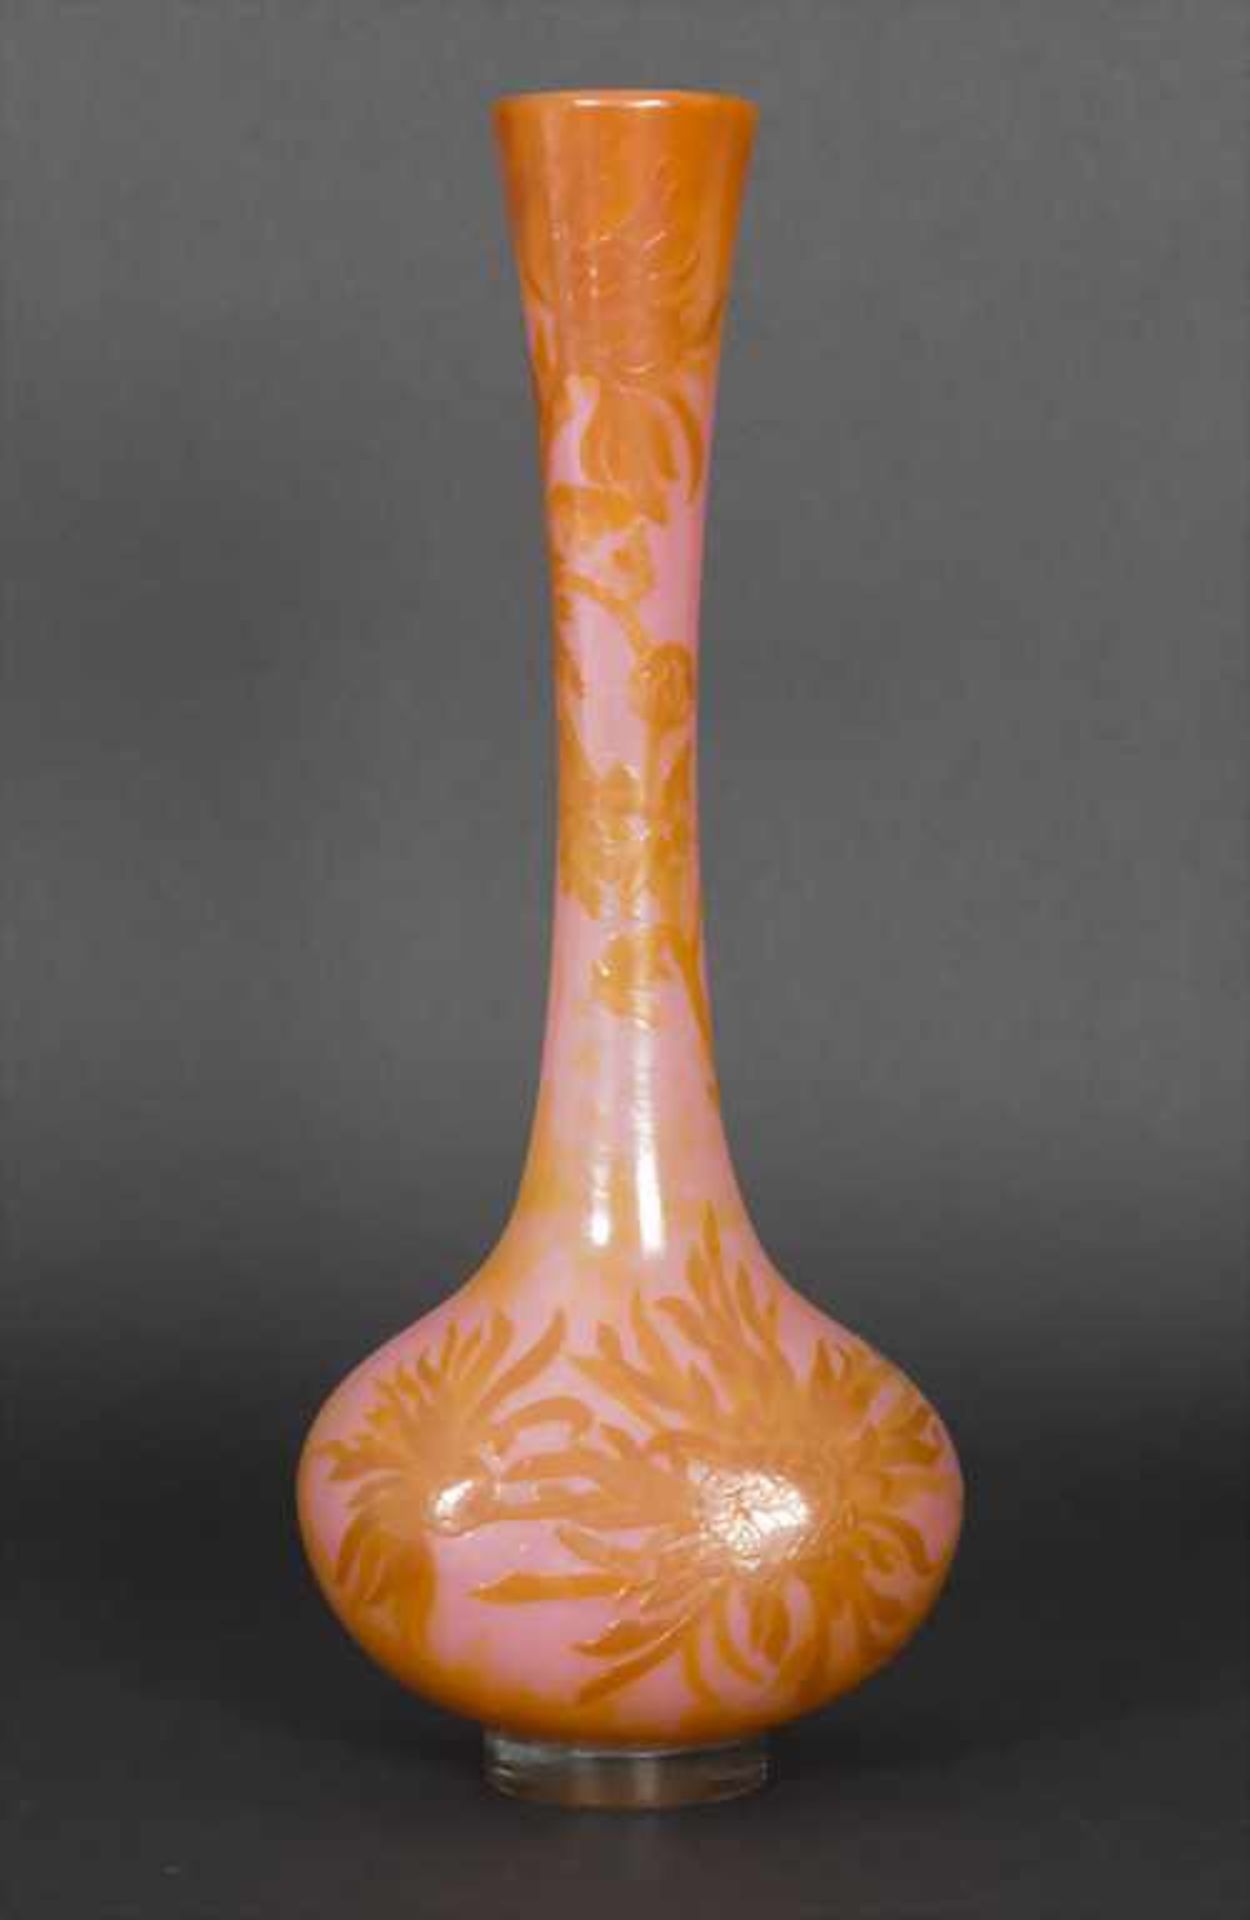 Große Jugendstil Vase mit Crysanthemen (Chrysanthèmes) / A large Art Nouveau vase with